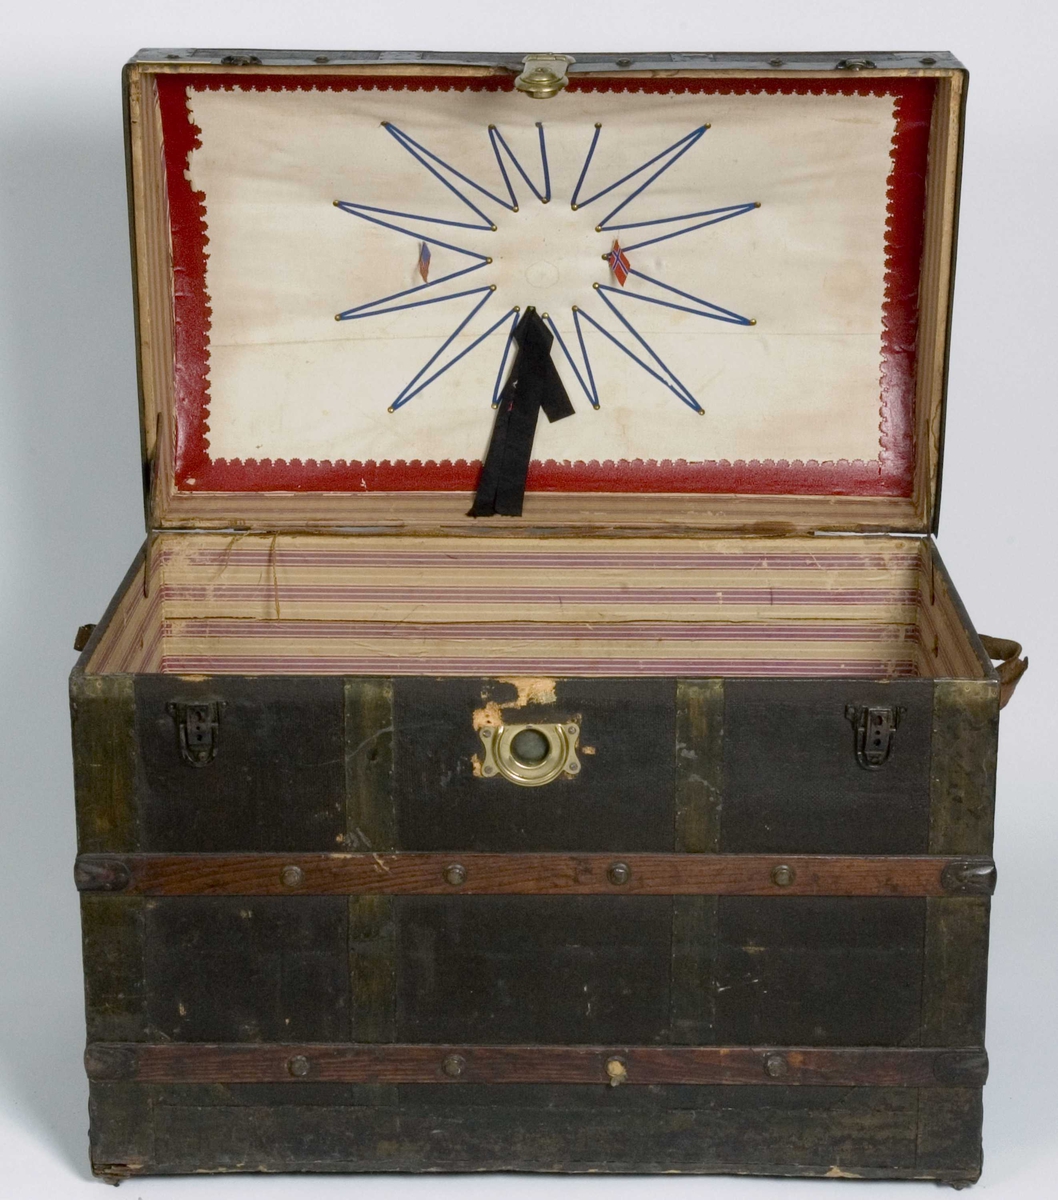 Koffert i kisteform med buet lokk, beslått med jernblikk og trelister. Innvendig utkledd med papir og tekstil.